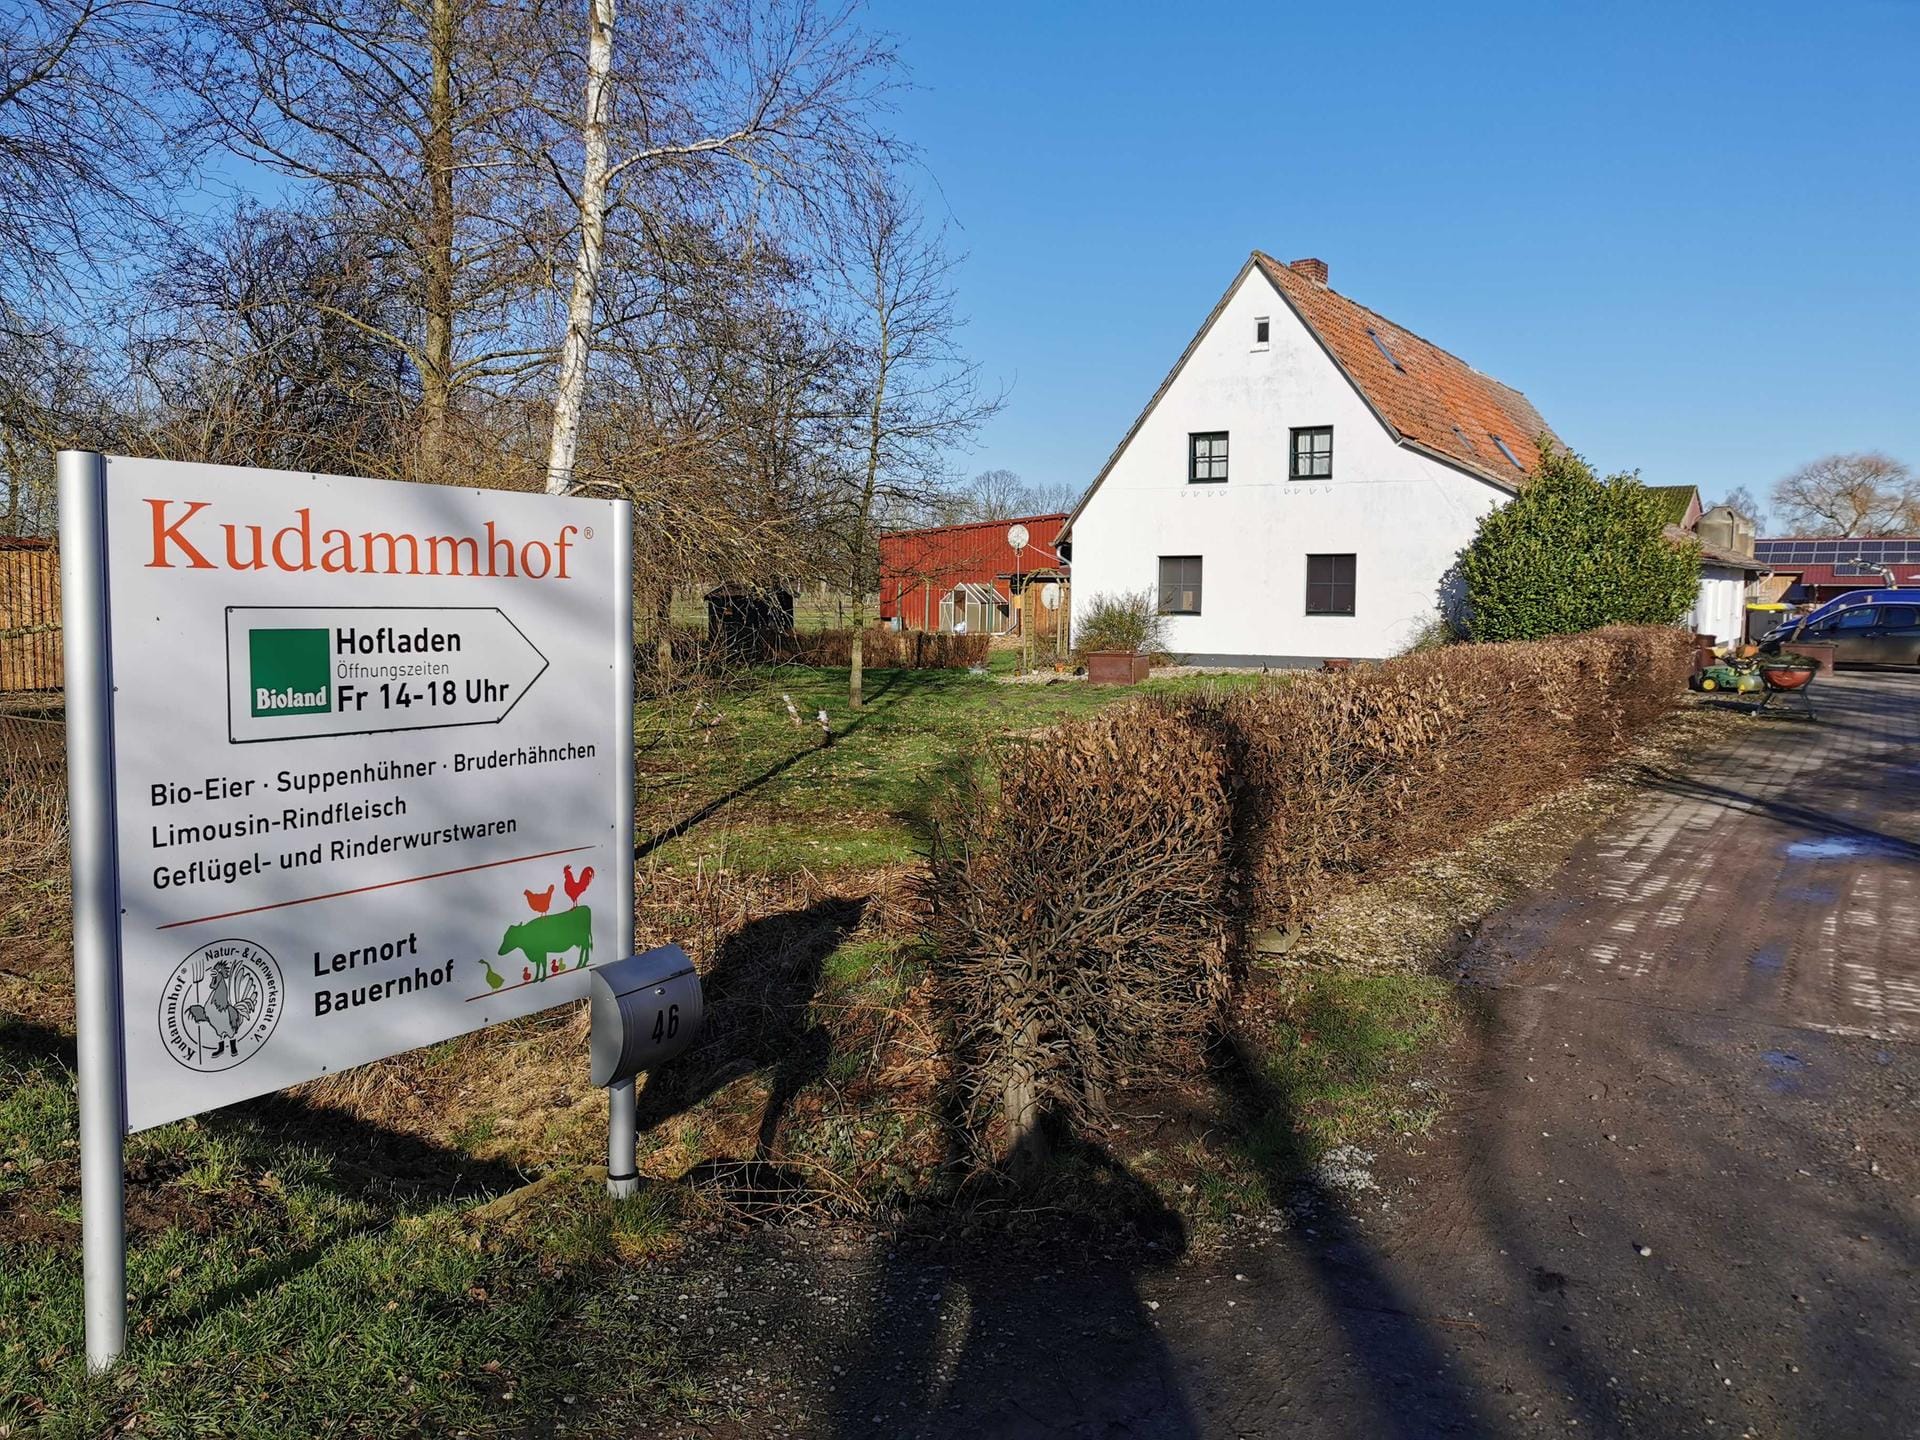 Der Kudammhof: In Adelheidsdorf im Landkreis Celle in Niedersachsen steht der Biolandhof von Johannes Erkens und seiner Frau Friederike Schultz. 1996 wurde der erste Freilandstall gebaut.